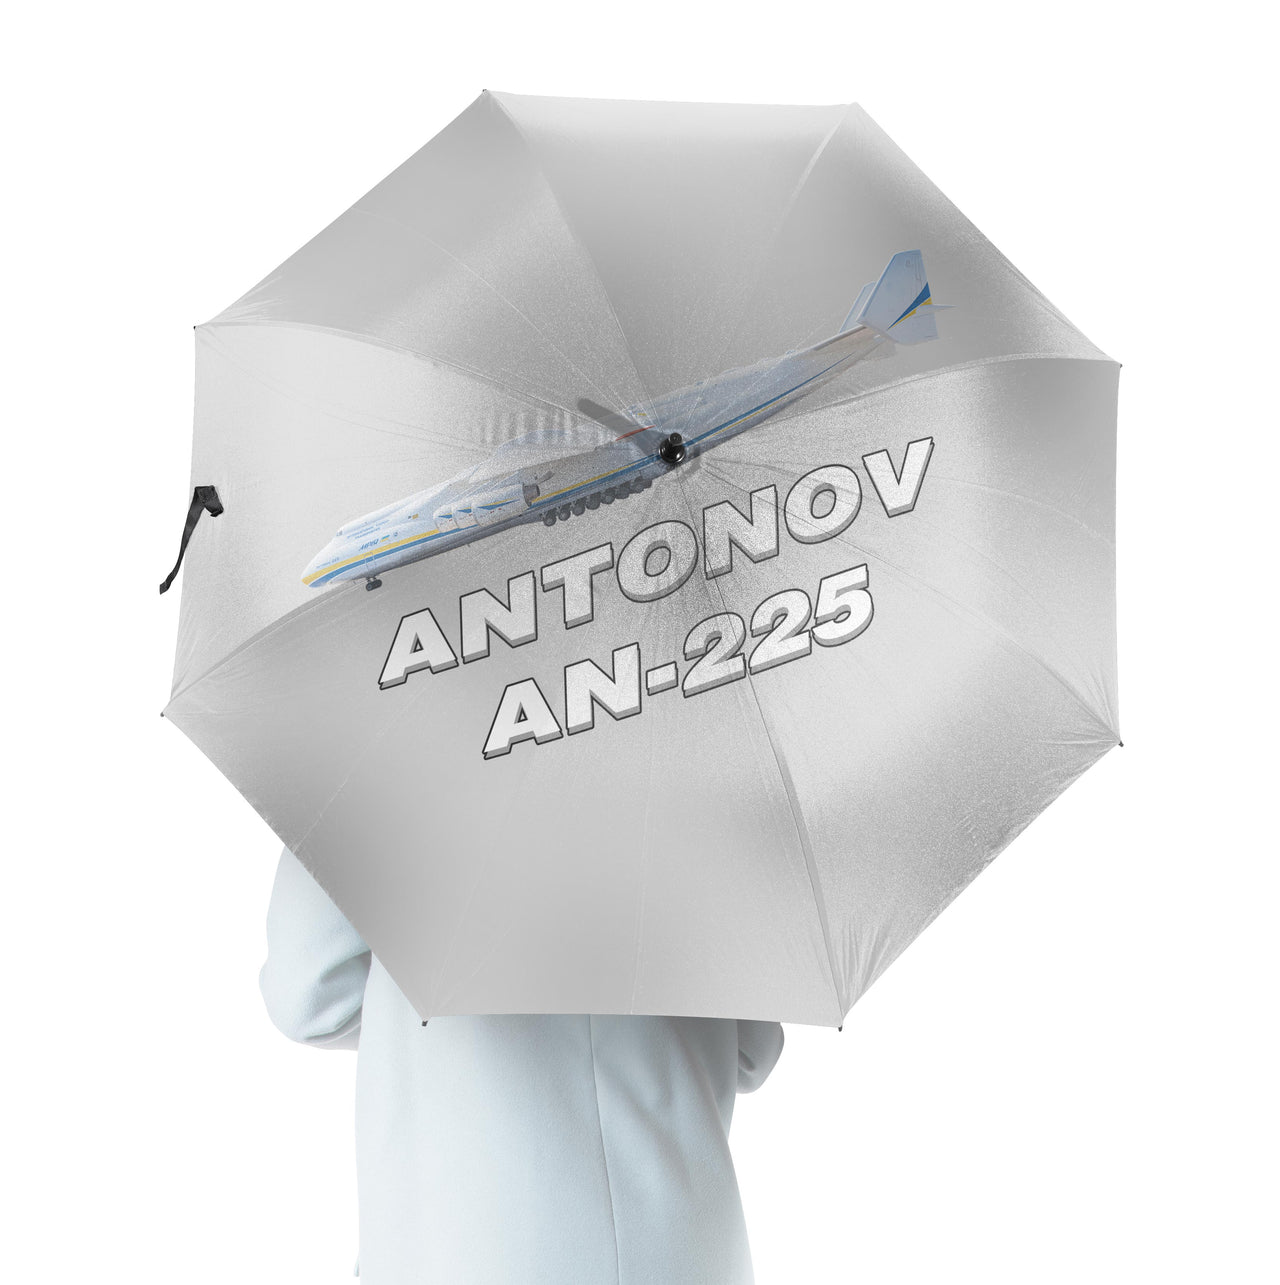 The Antonov AN-225 Designed Umbrella